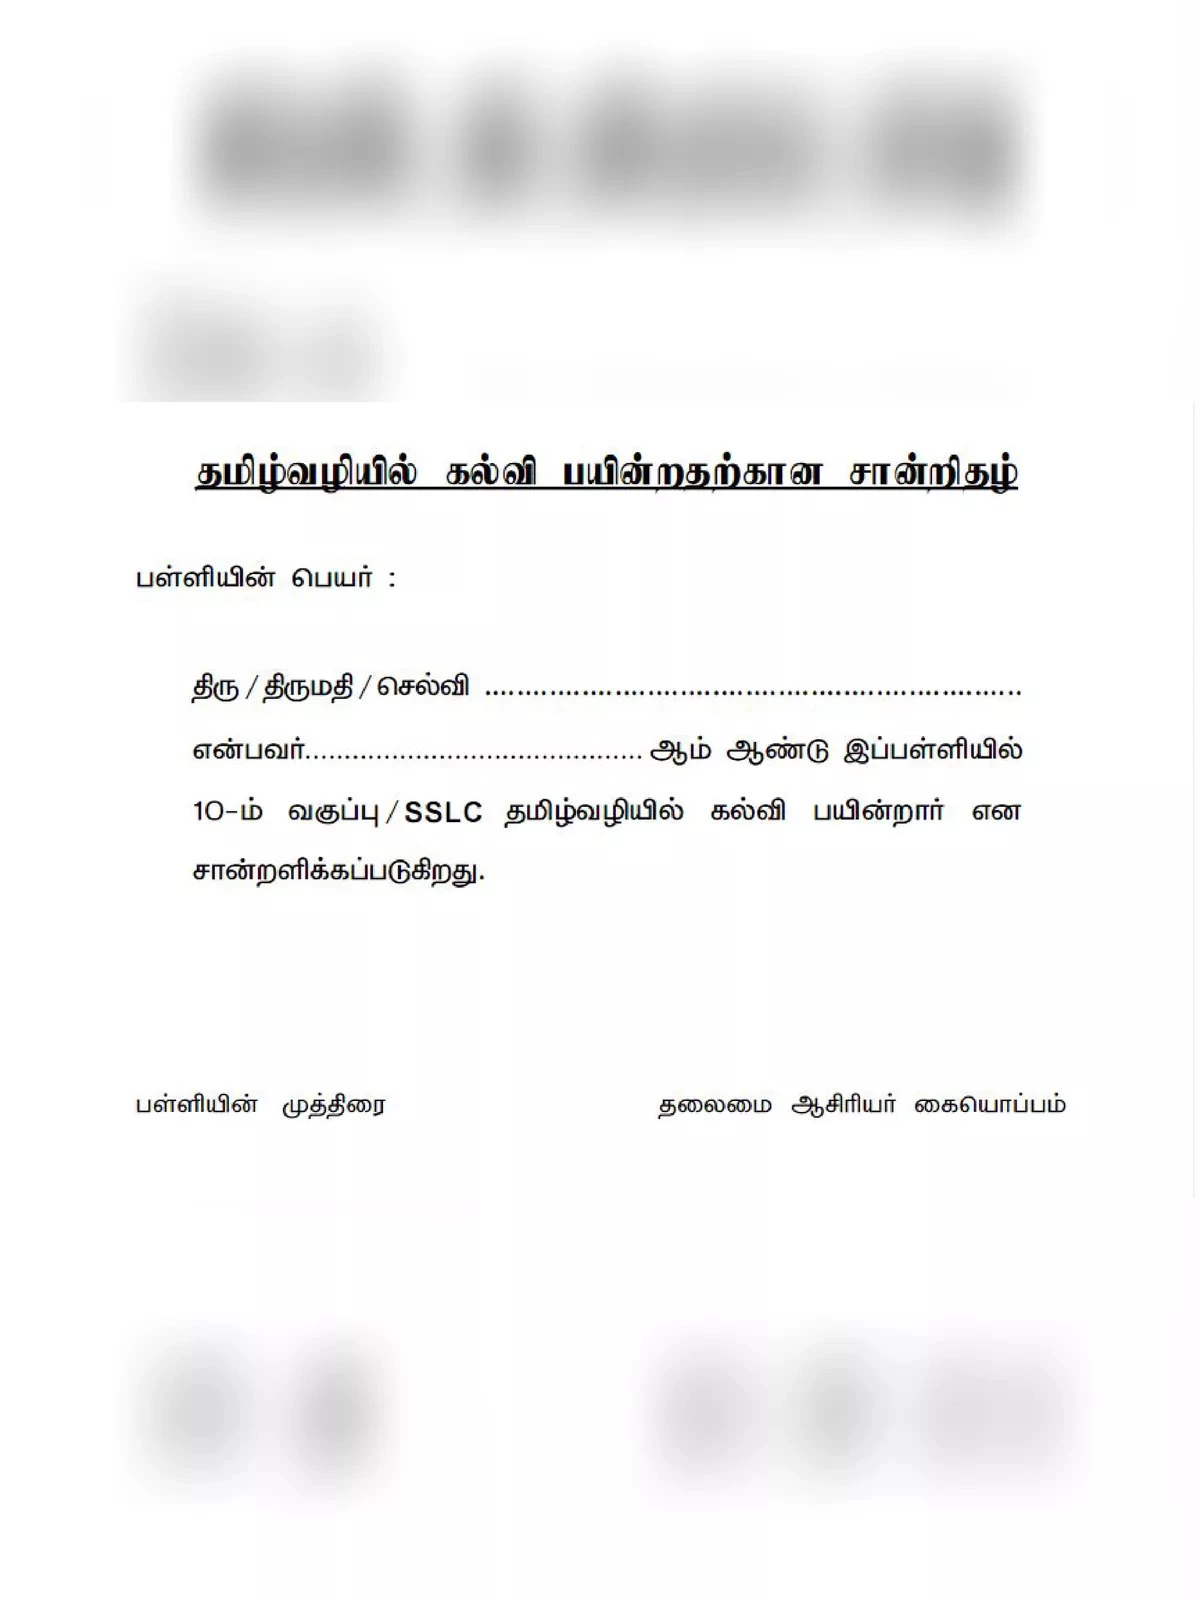 Tamil Vali Kalvi Certificate Form